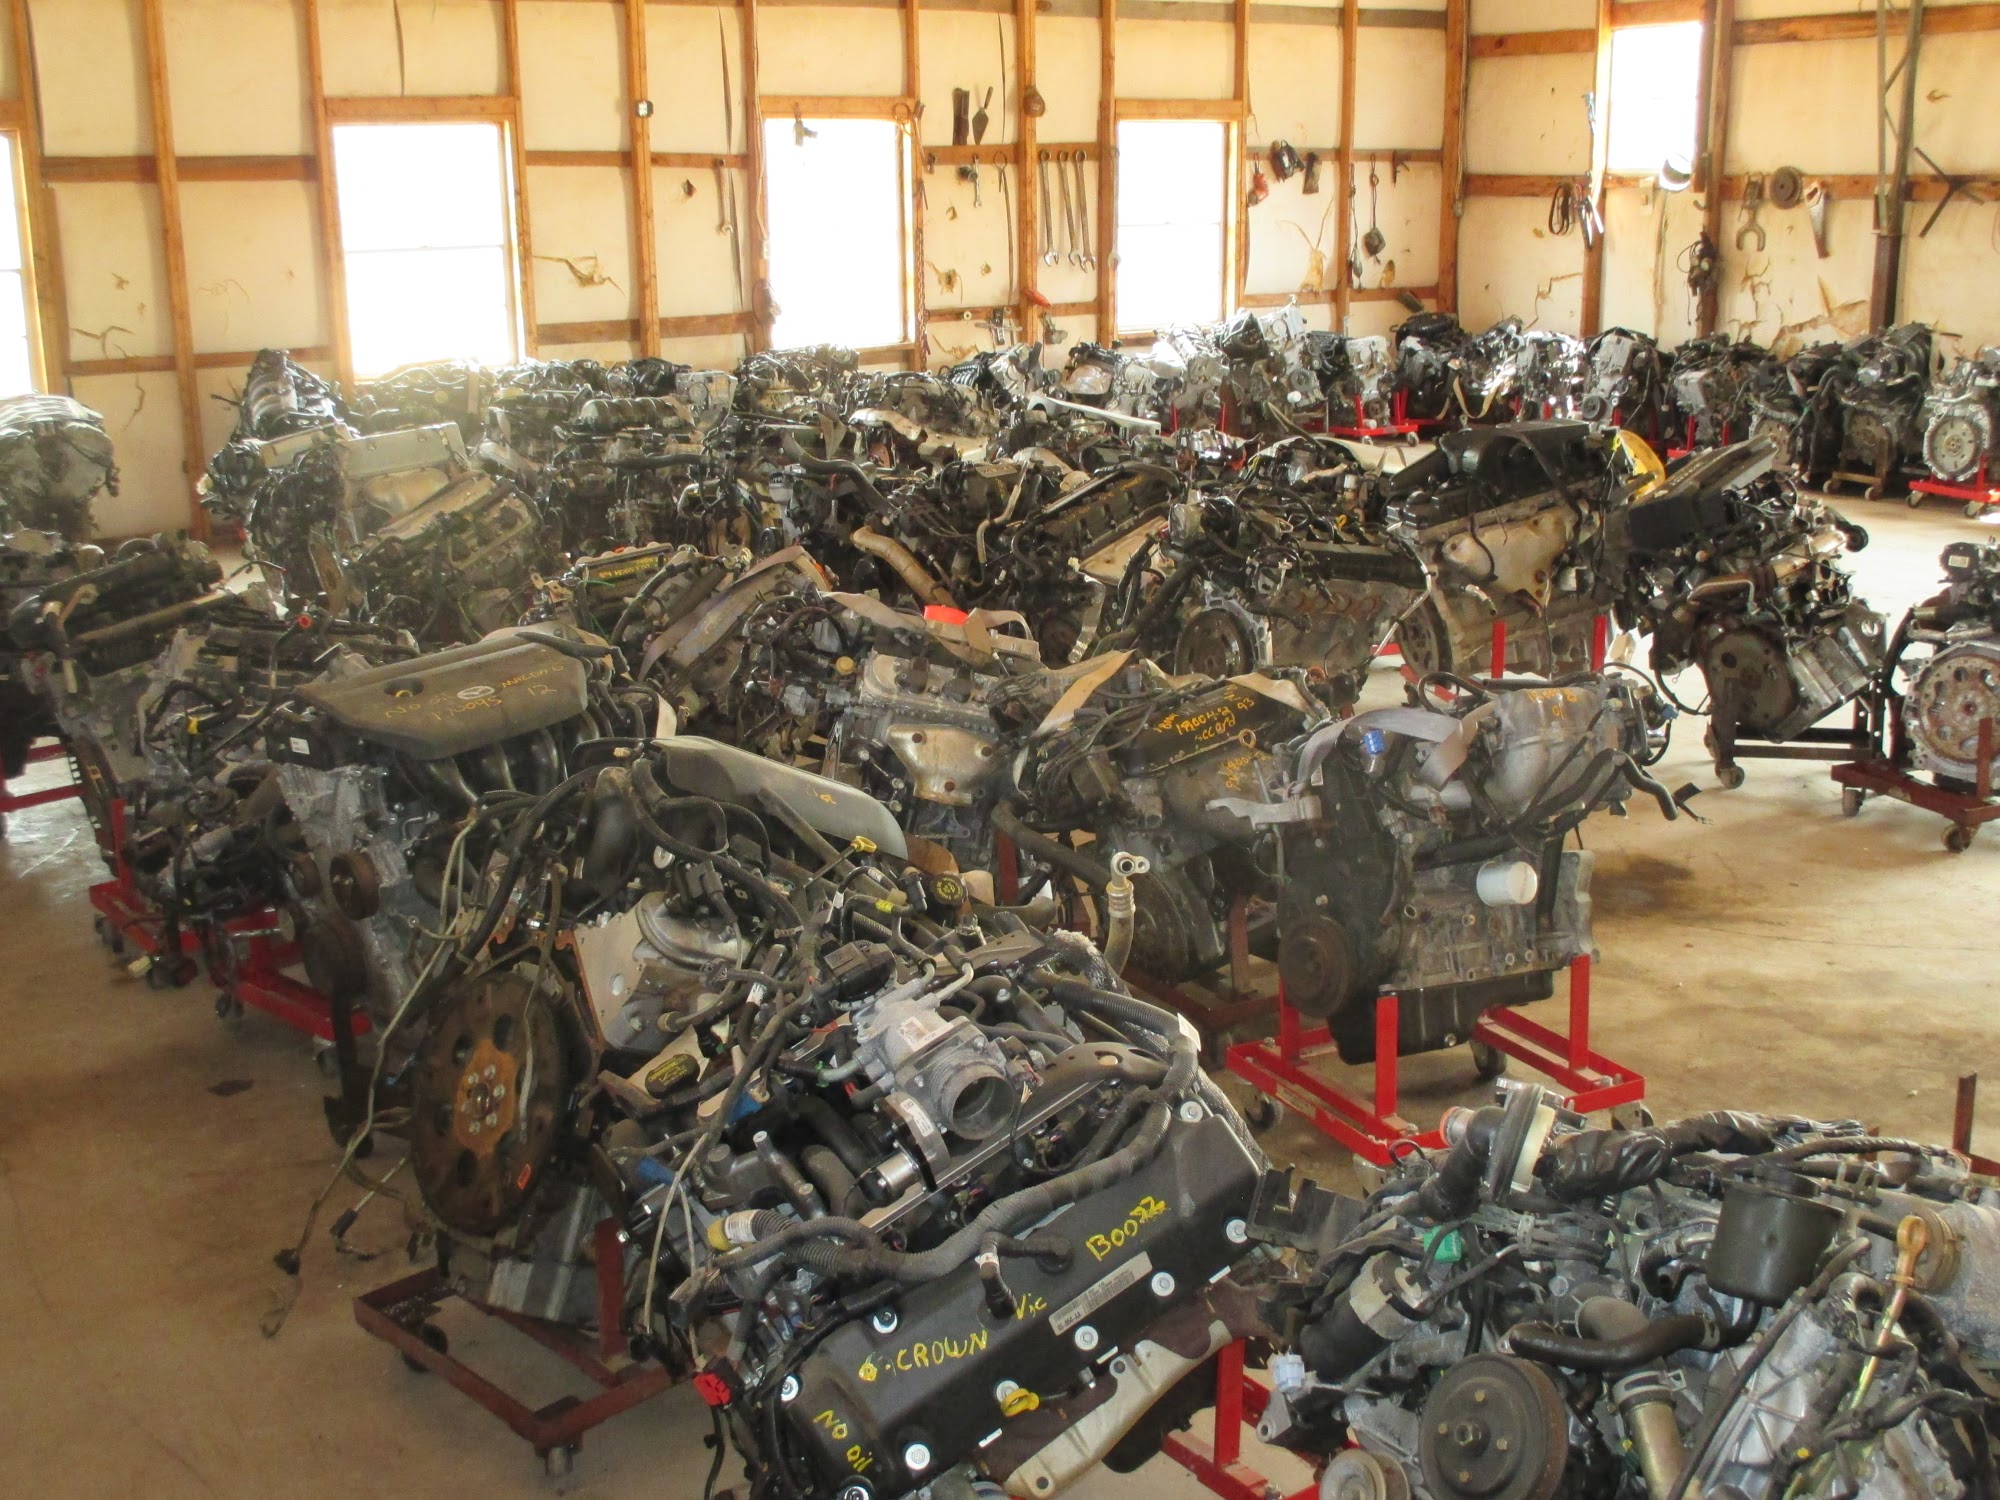 Dixie Auto Parts